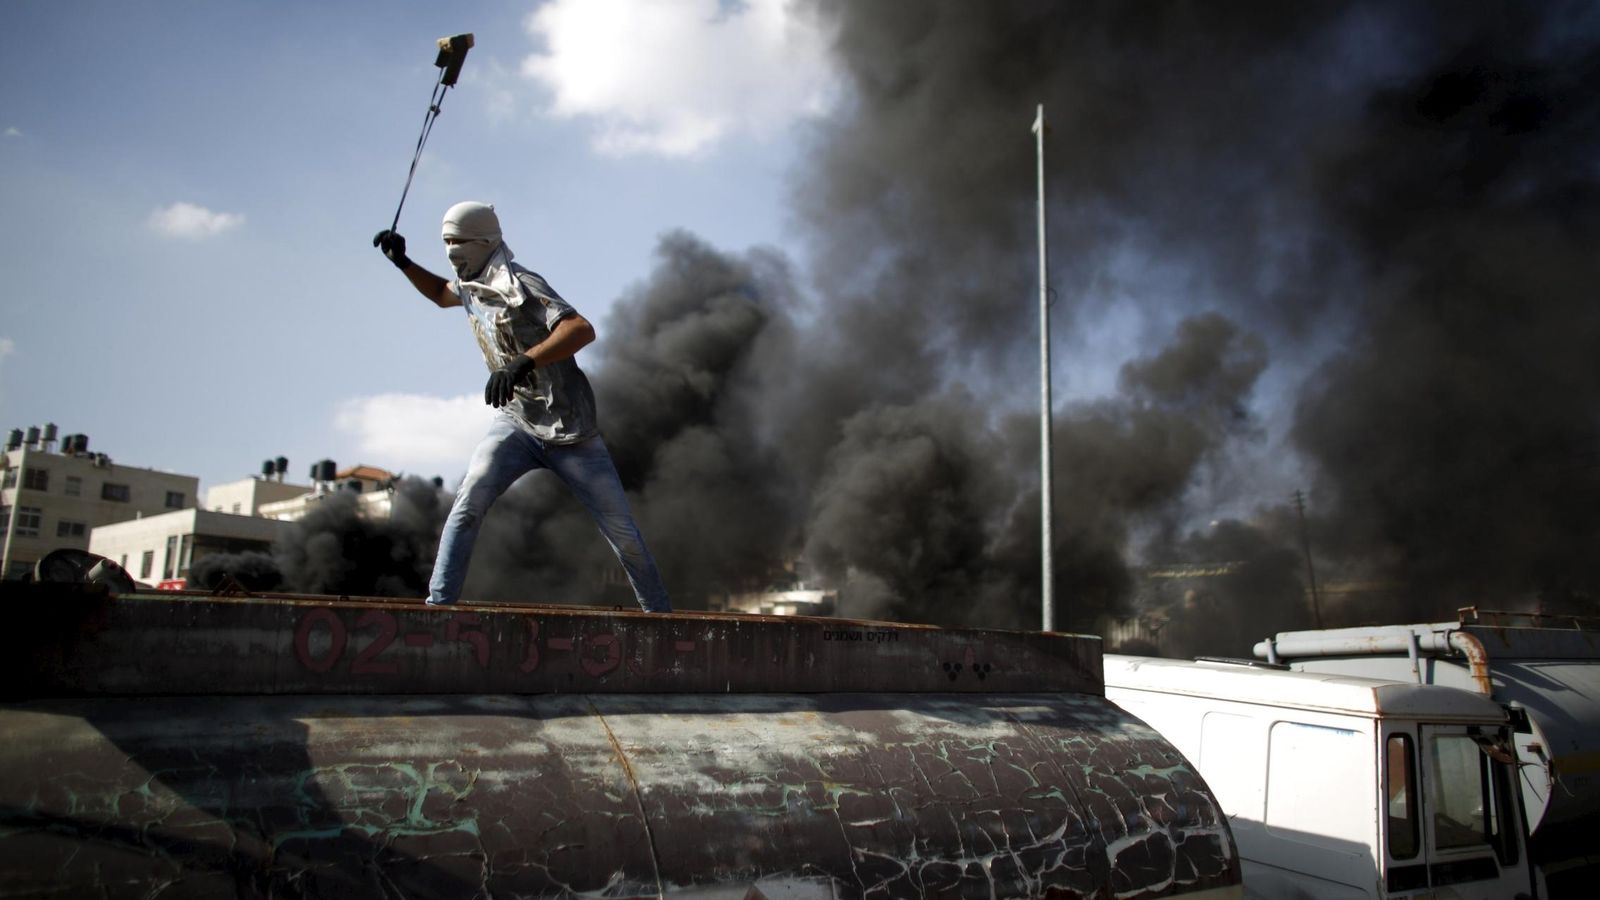 Foto: Un palestino lanza piedras contra soldados israelíes durante enfrentamientos en la colonia judía de Beit El, cerca de Ramala, en Cisjordania (Reuters).